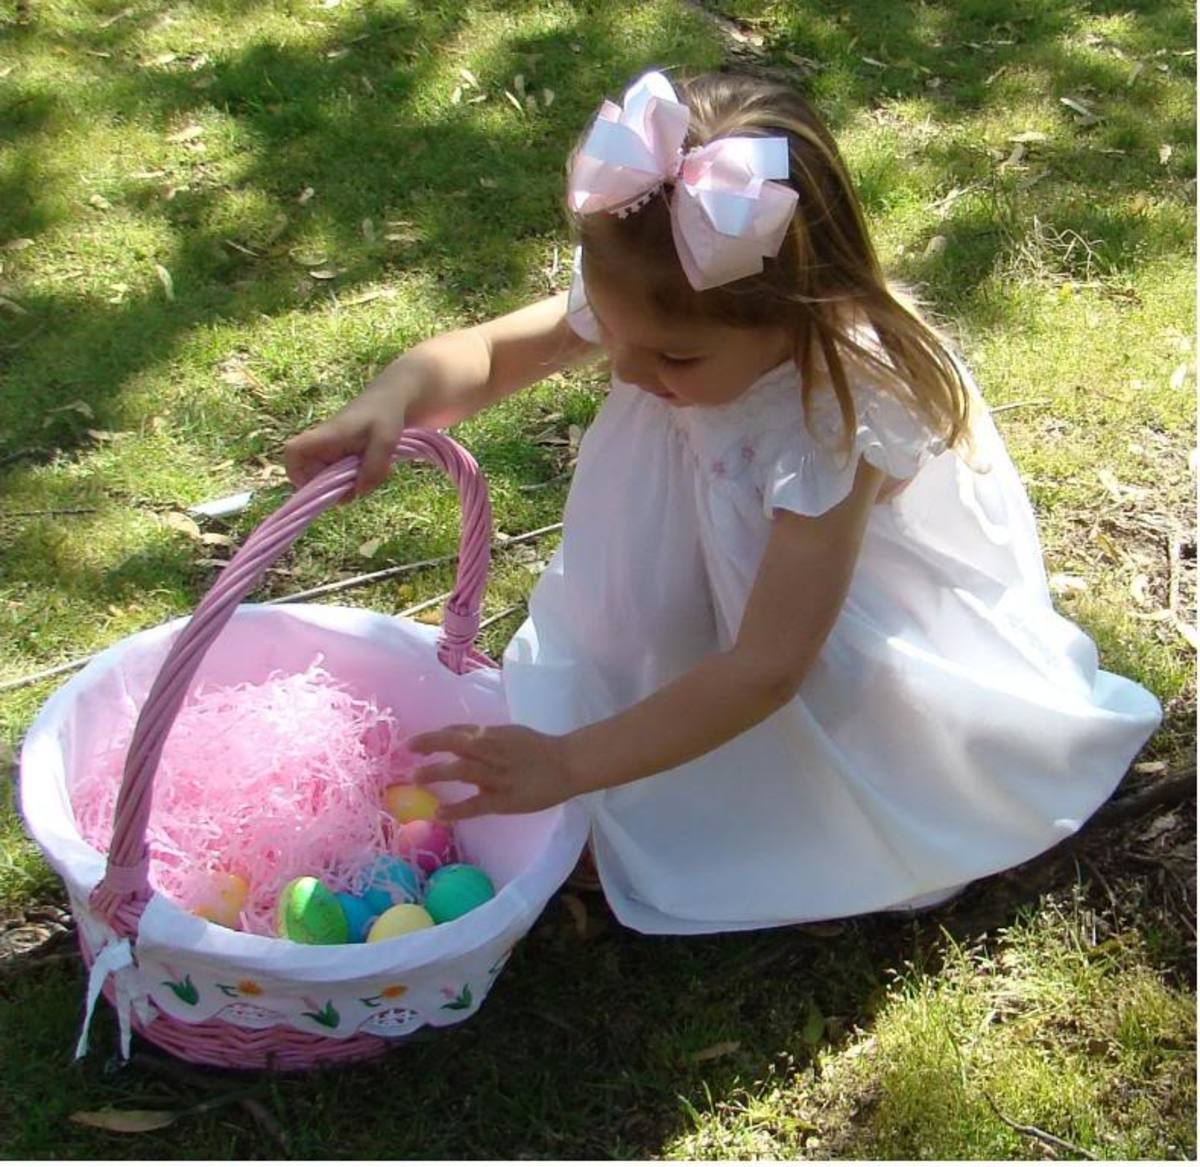 A Little Girl Finding Eggs